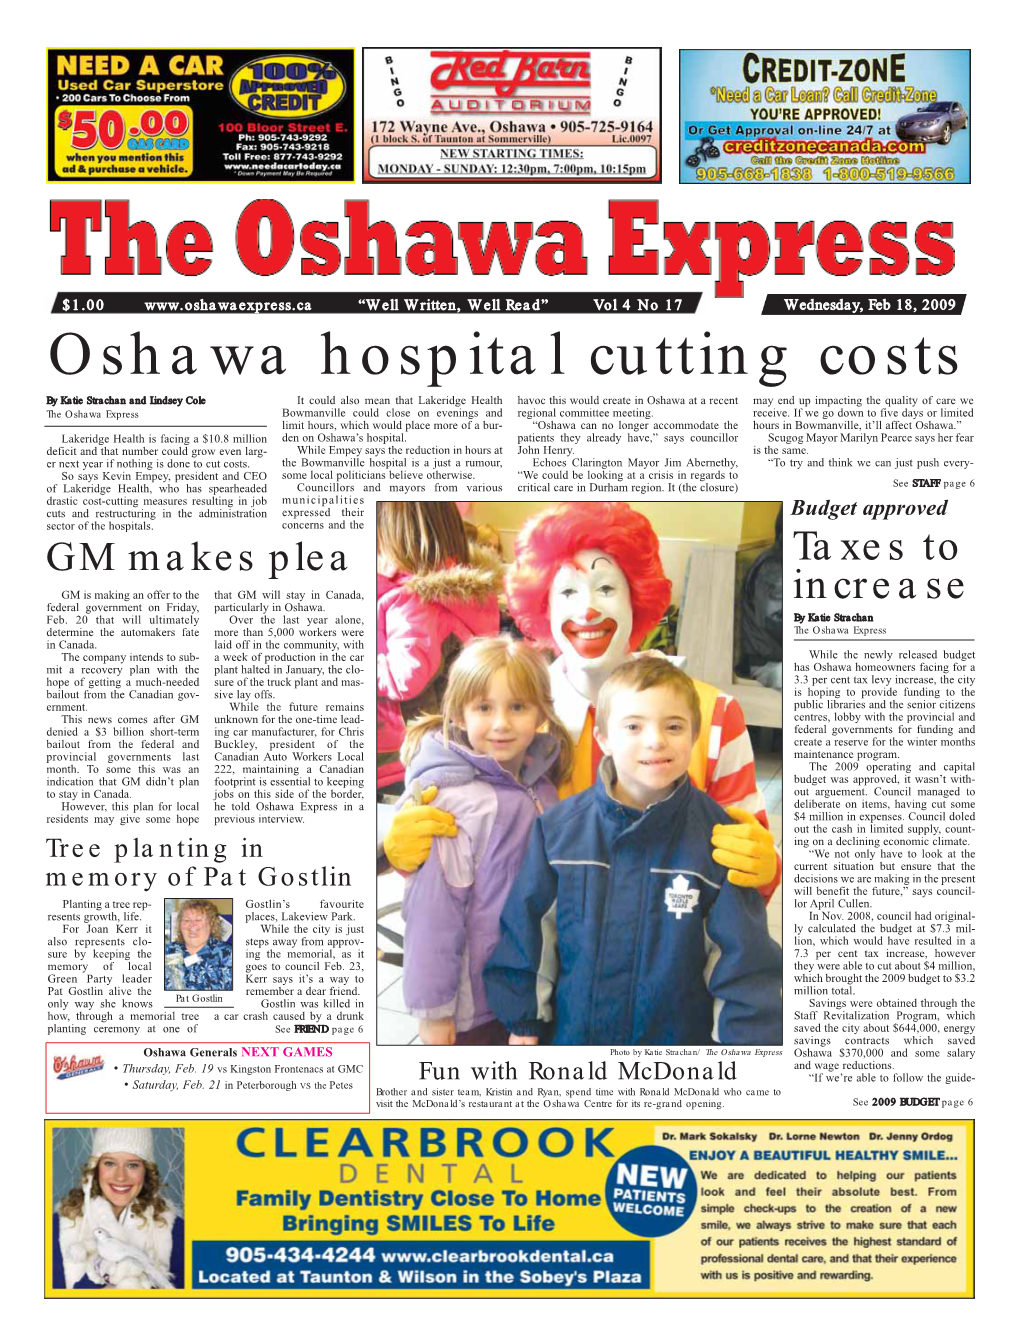 Oshawa Hospital Cutting Costs